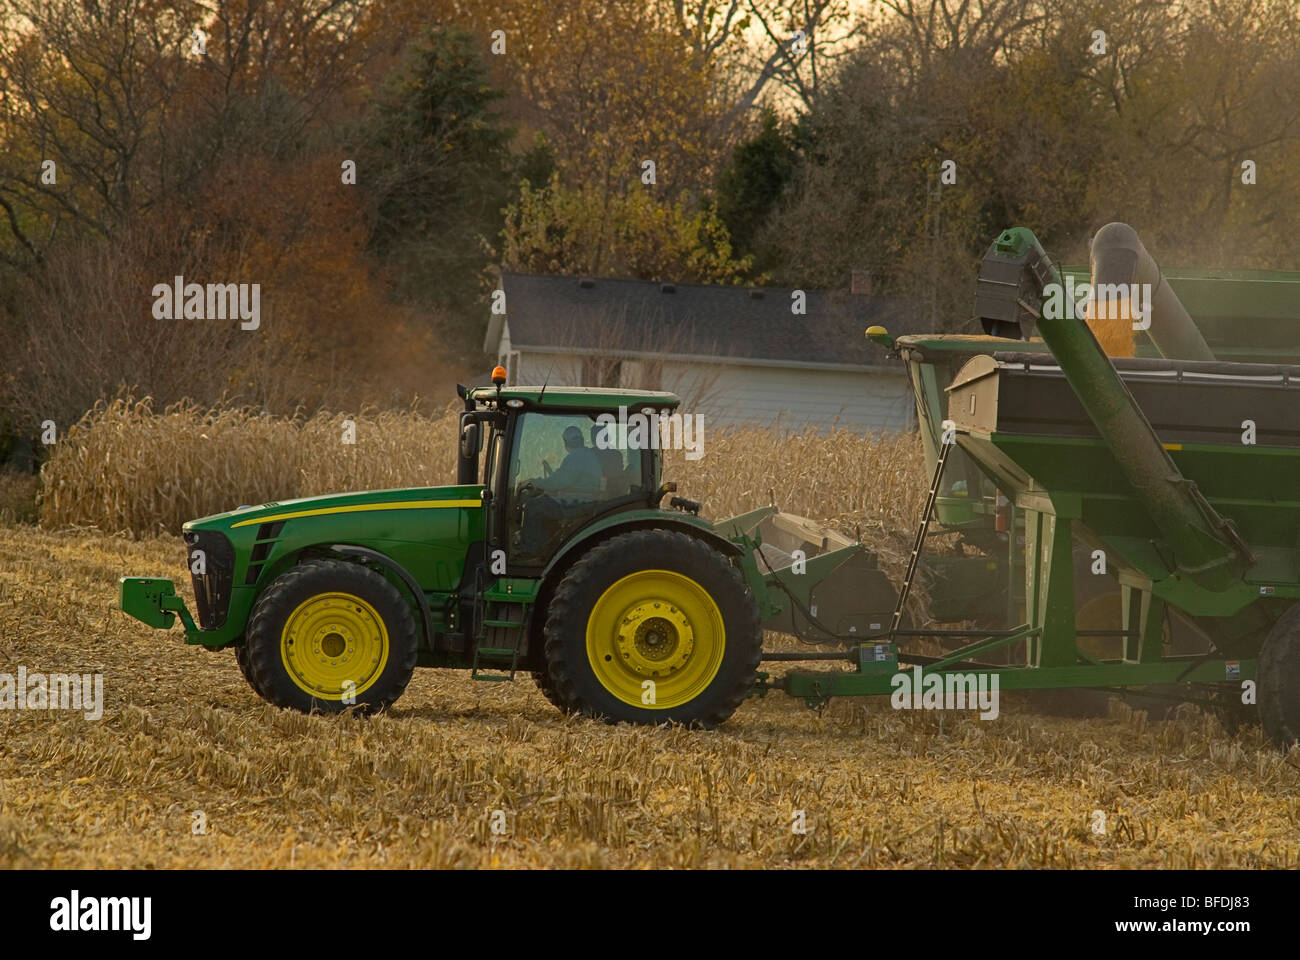 La recolección de la cosecha de maíz en Indiana central, dos agricultores están en la cabina del tractor como el selector de maíz vacía es la carga. Foto de stock